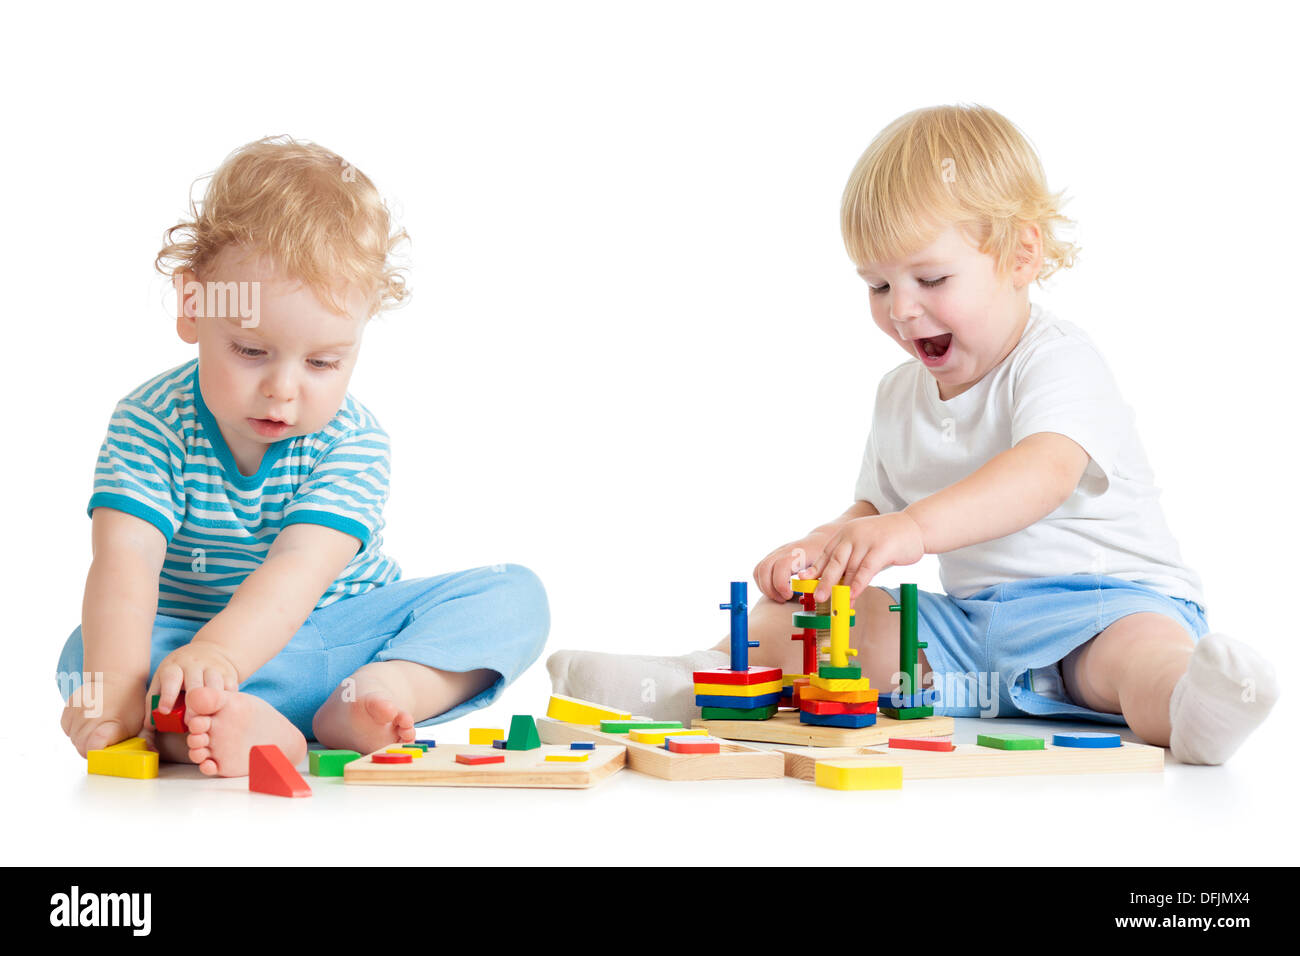 Enfant jouant concentré l'éducation logique jouets avec beaucoup d'intérêt sur fond blanc Banque D'Images